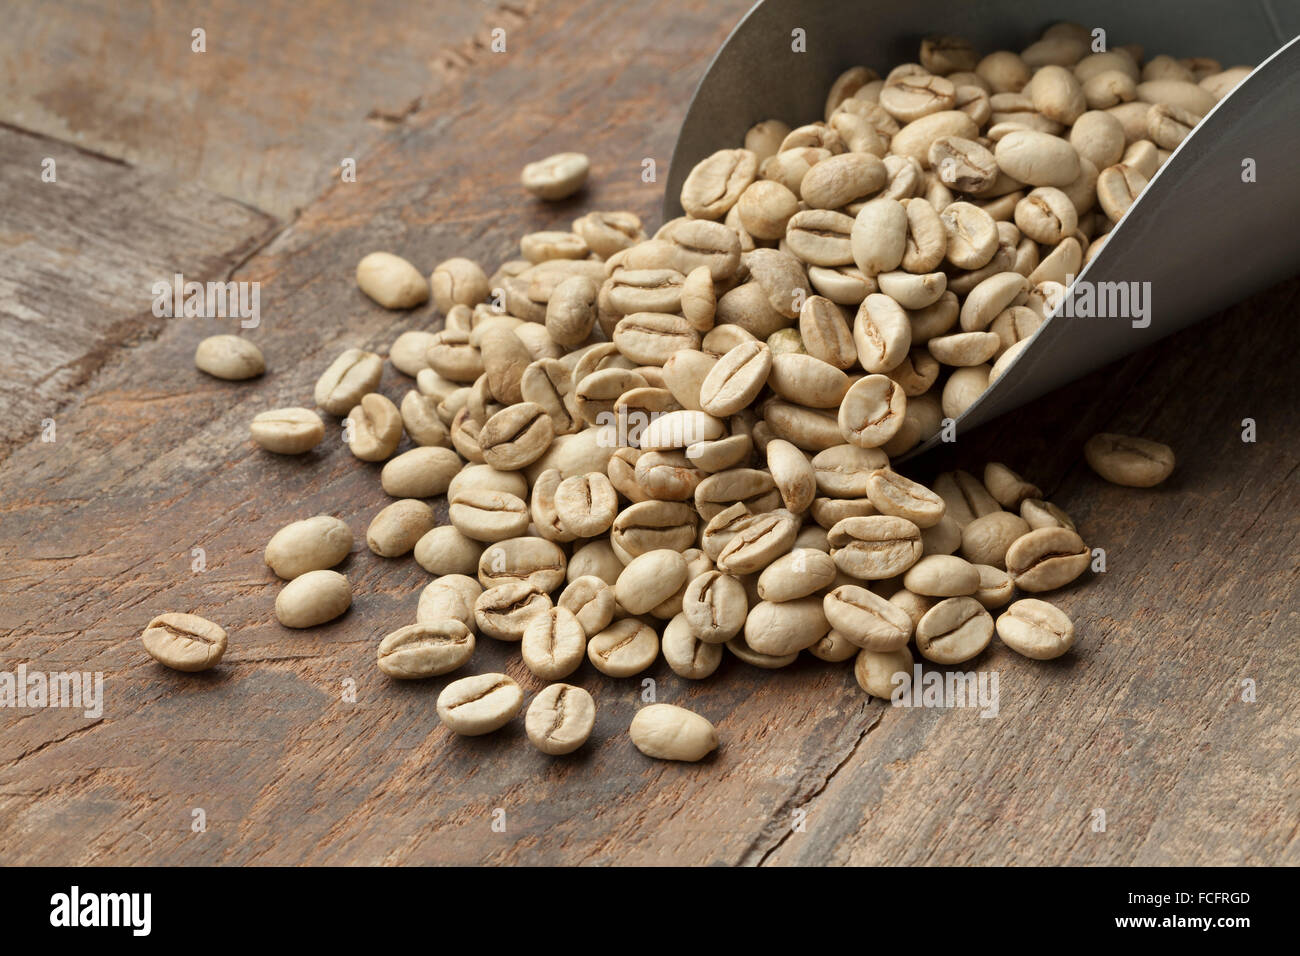 Tas de Malabar indiennes les grains de café non torréfié vert Banque D'Images